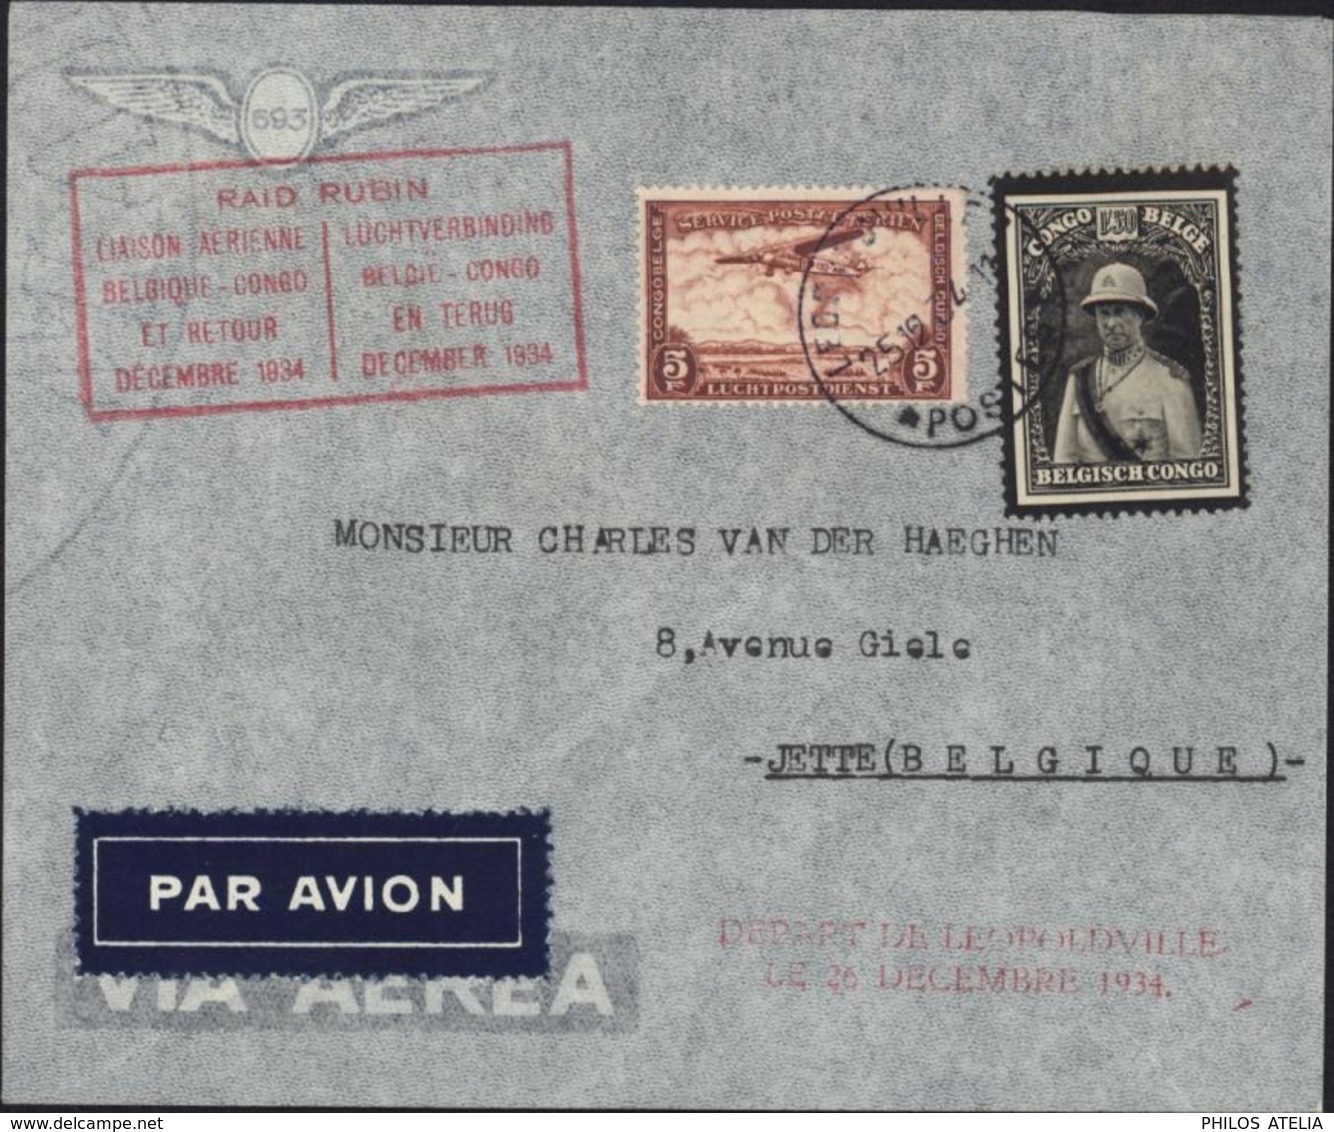 Congo Belge Poste Aérienne Raid Rubin Liaison Aérienne Belgique Congo Et Retour Décembre 1934 YT 184 + PA12 - Covers & Documents